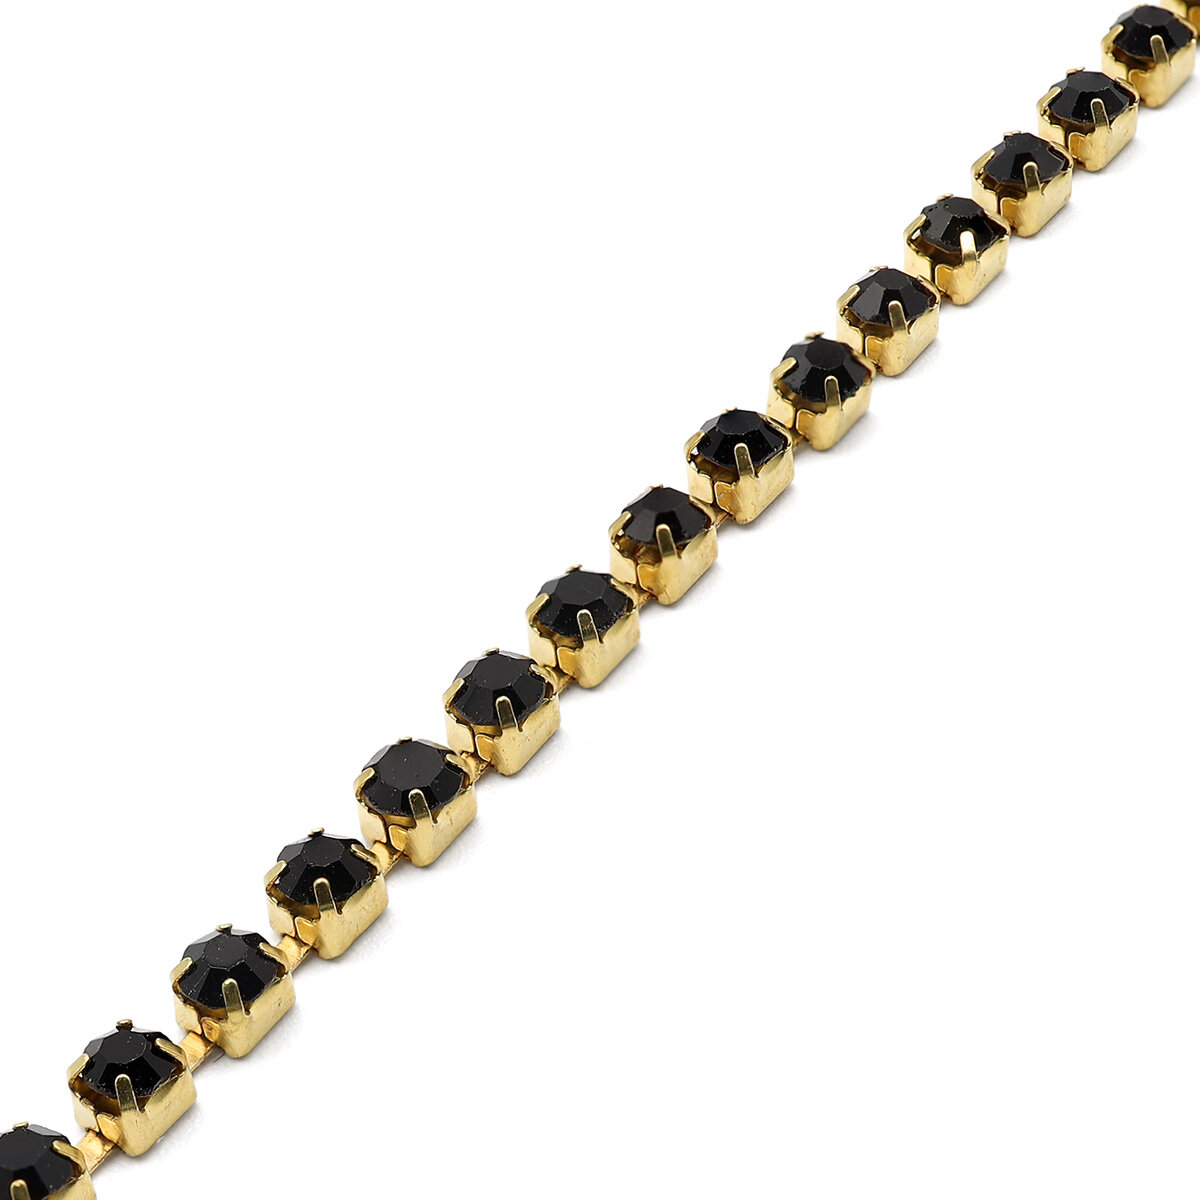 ЦС012ЗЦ3 Стразовые цепочки (золото), цвет: черный, размер 3 мм, 30 см/упак